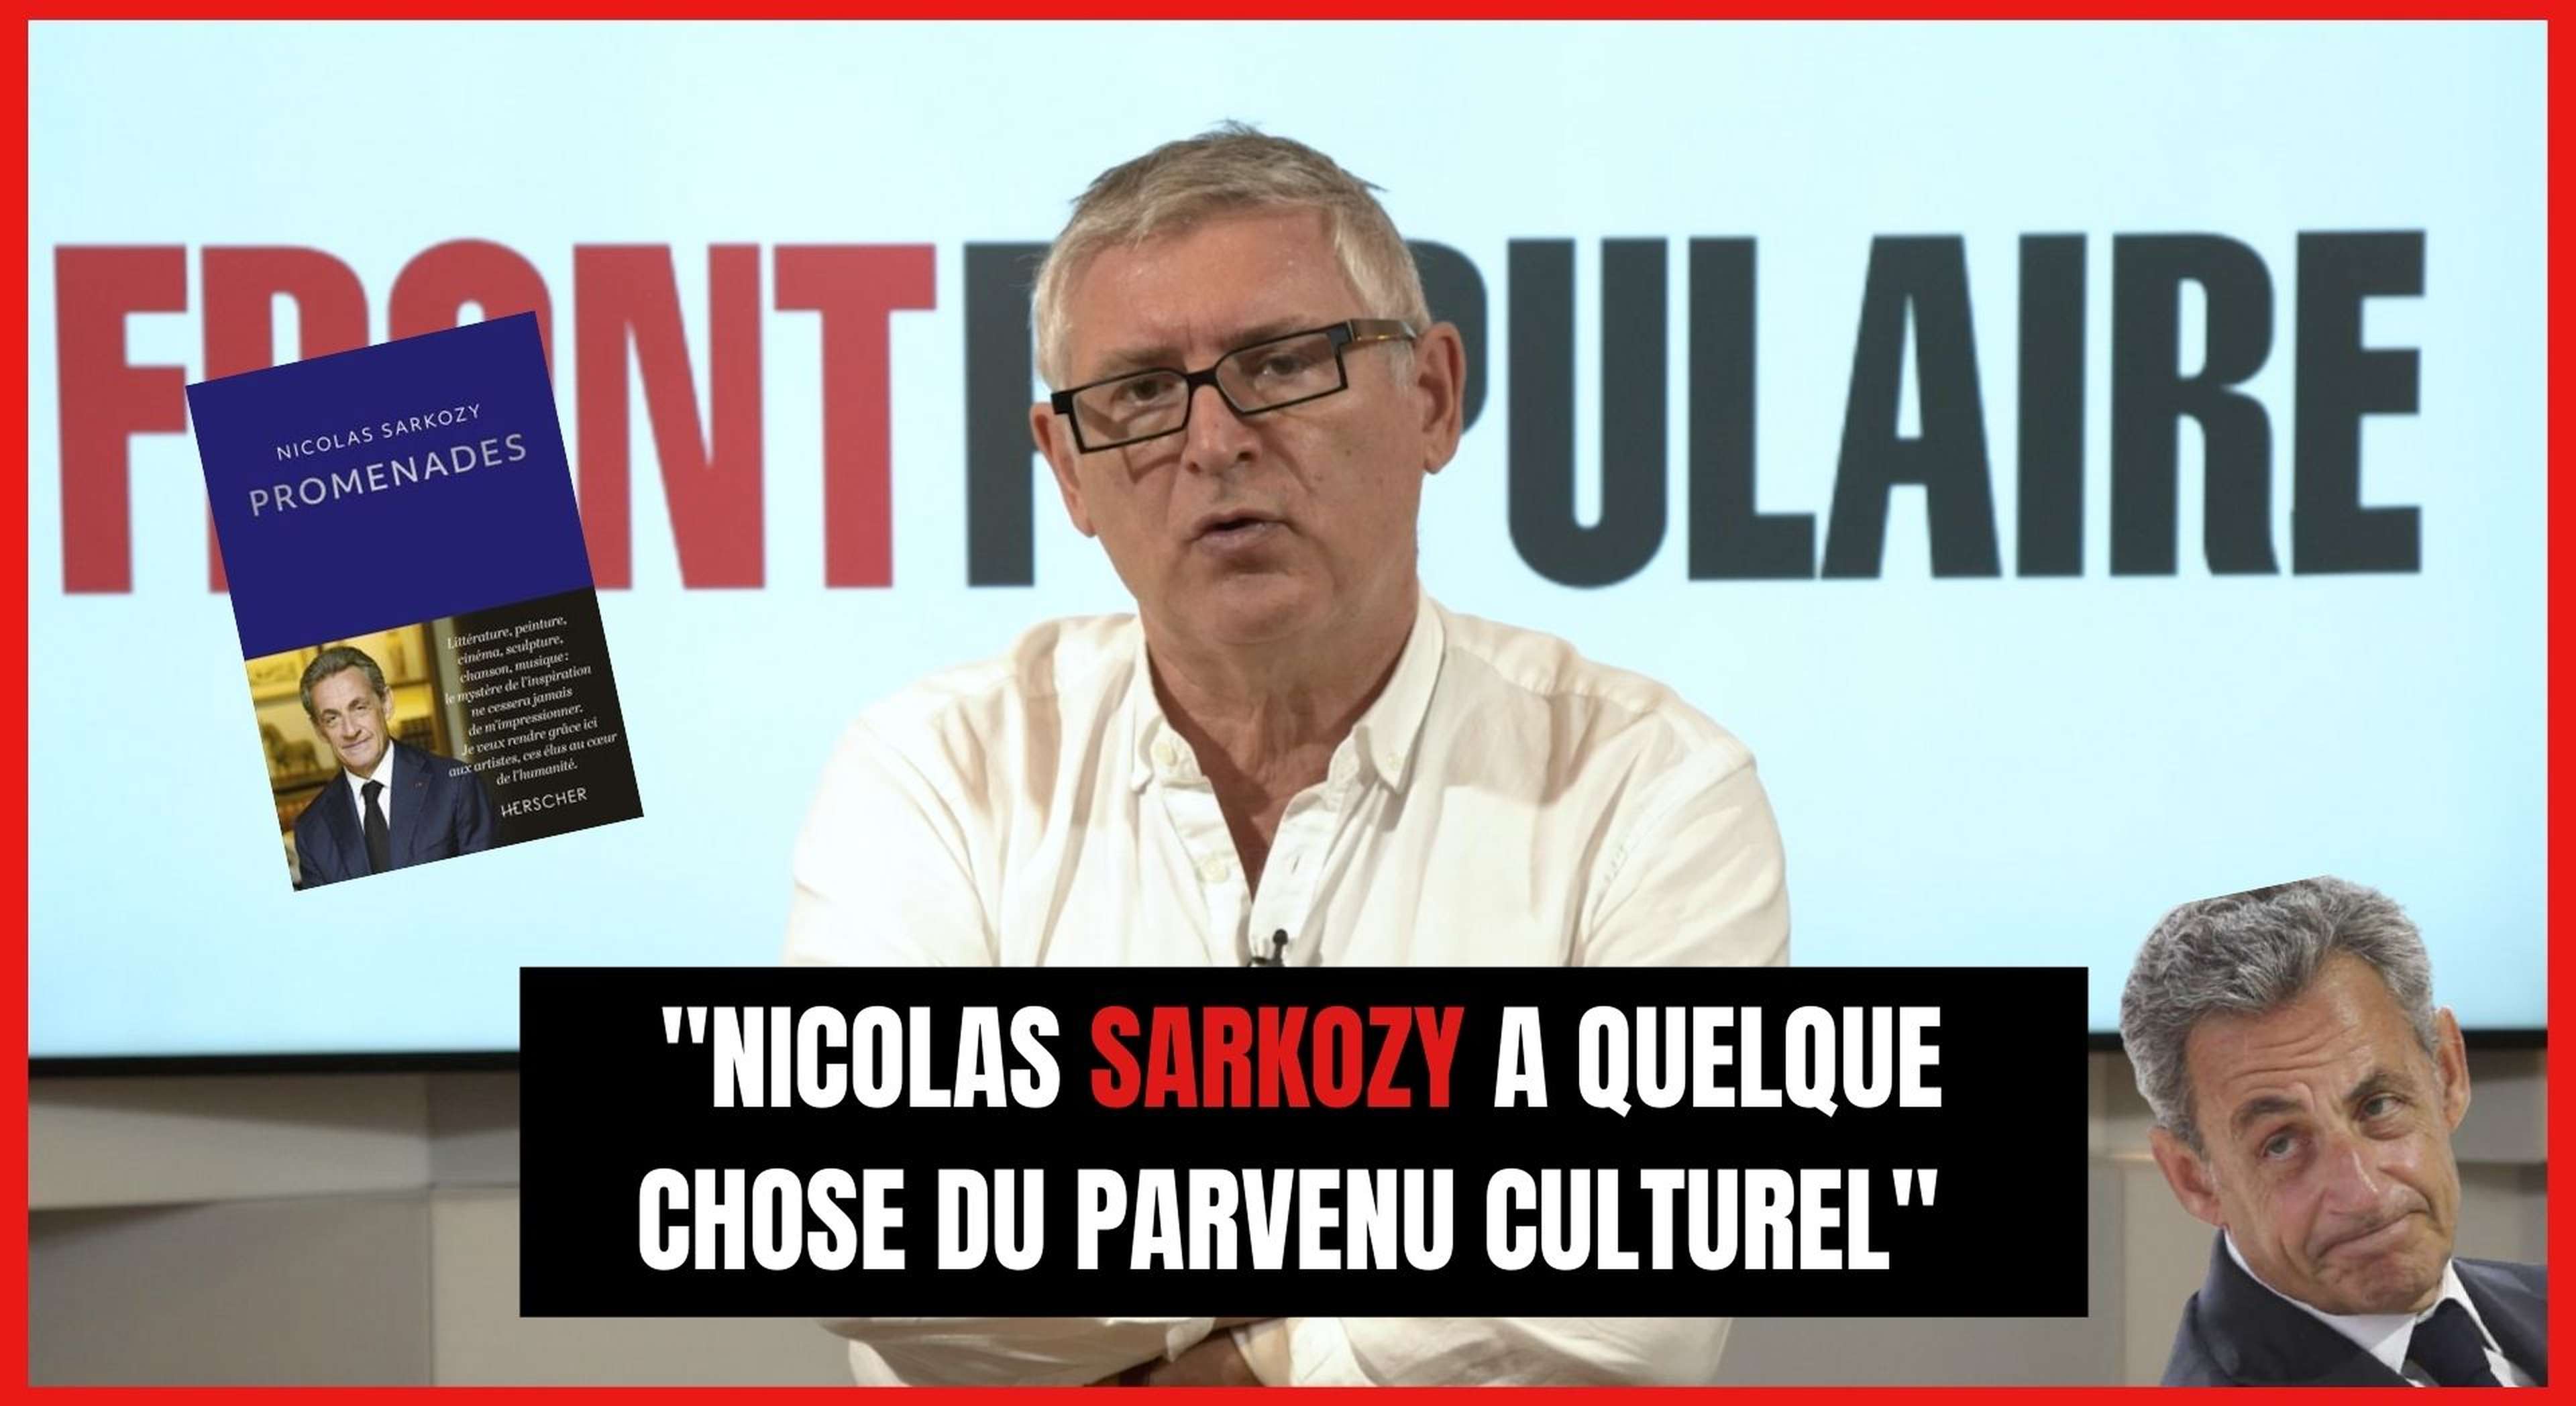 Michel Onfray : "Nicolas Sarkozy a quelque chose du parvenu culturel"